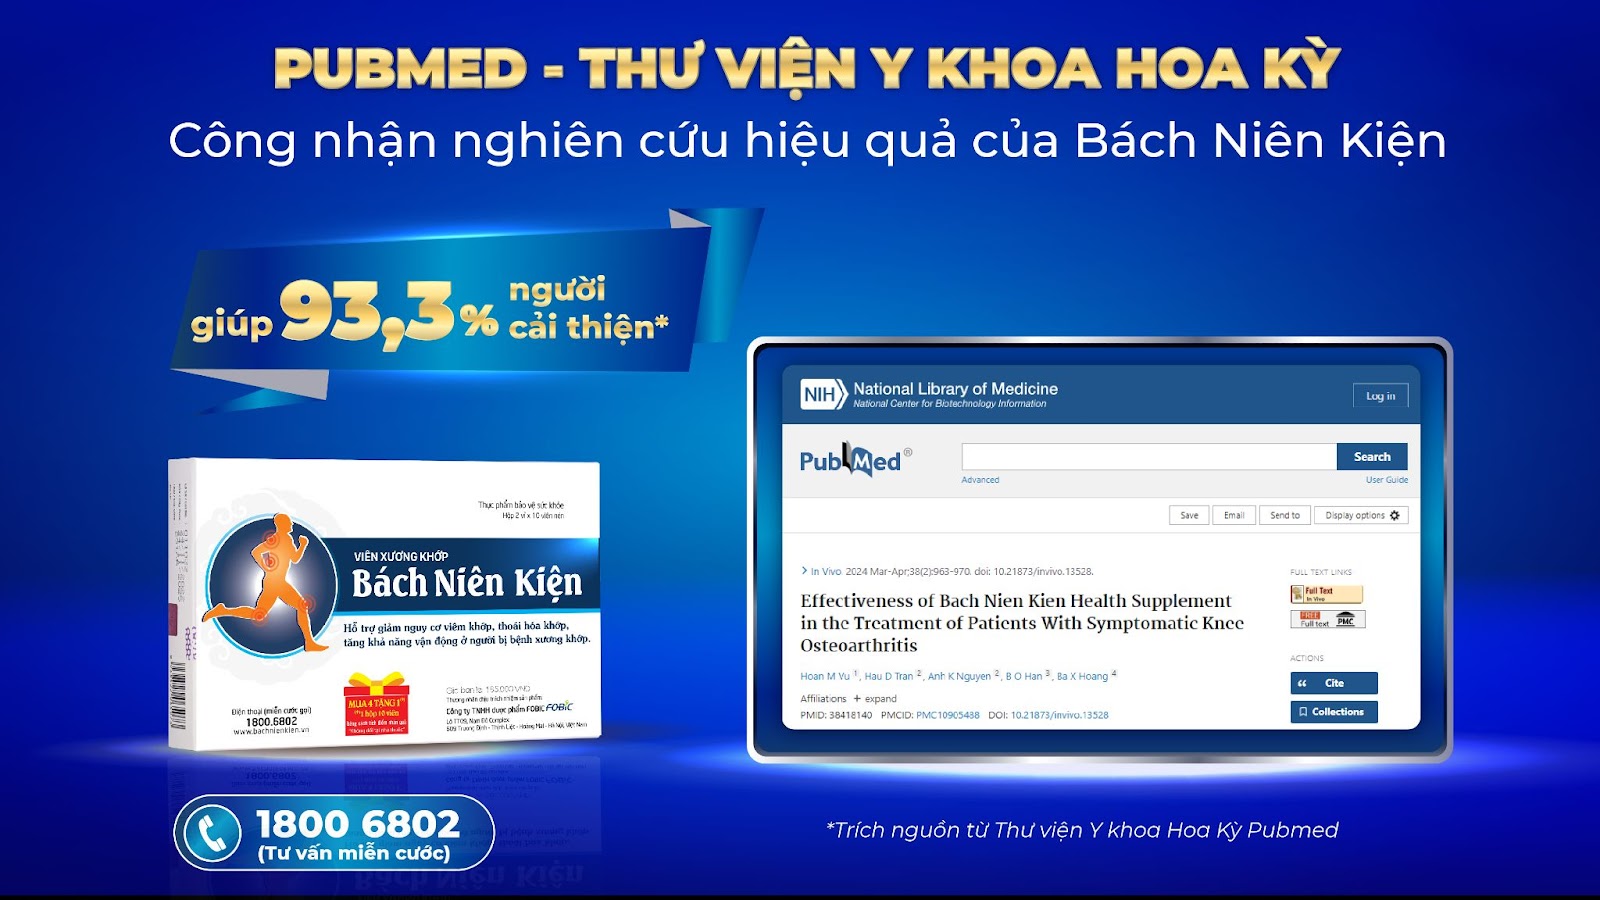 Truyền hình HTV đưa tin Bách Niên Kiện của Việt Nam được Thư viện y khoa Hoa Kỳ công nhận hiệu quả - 1